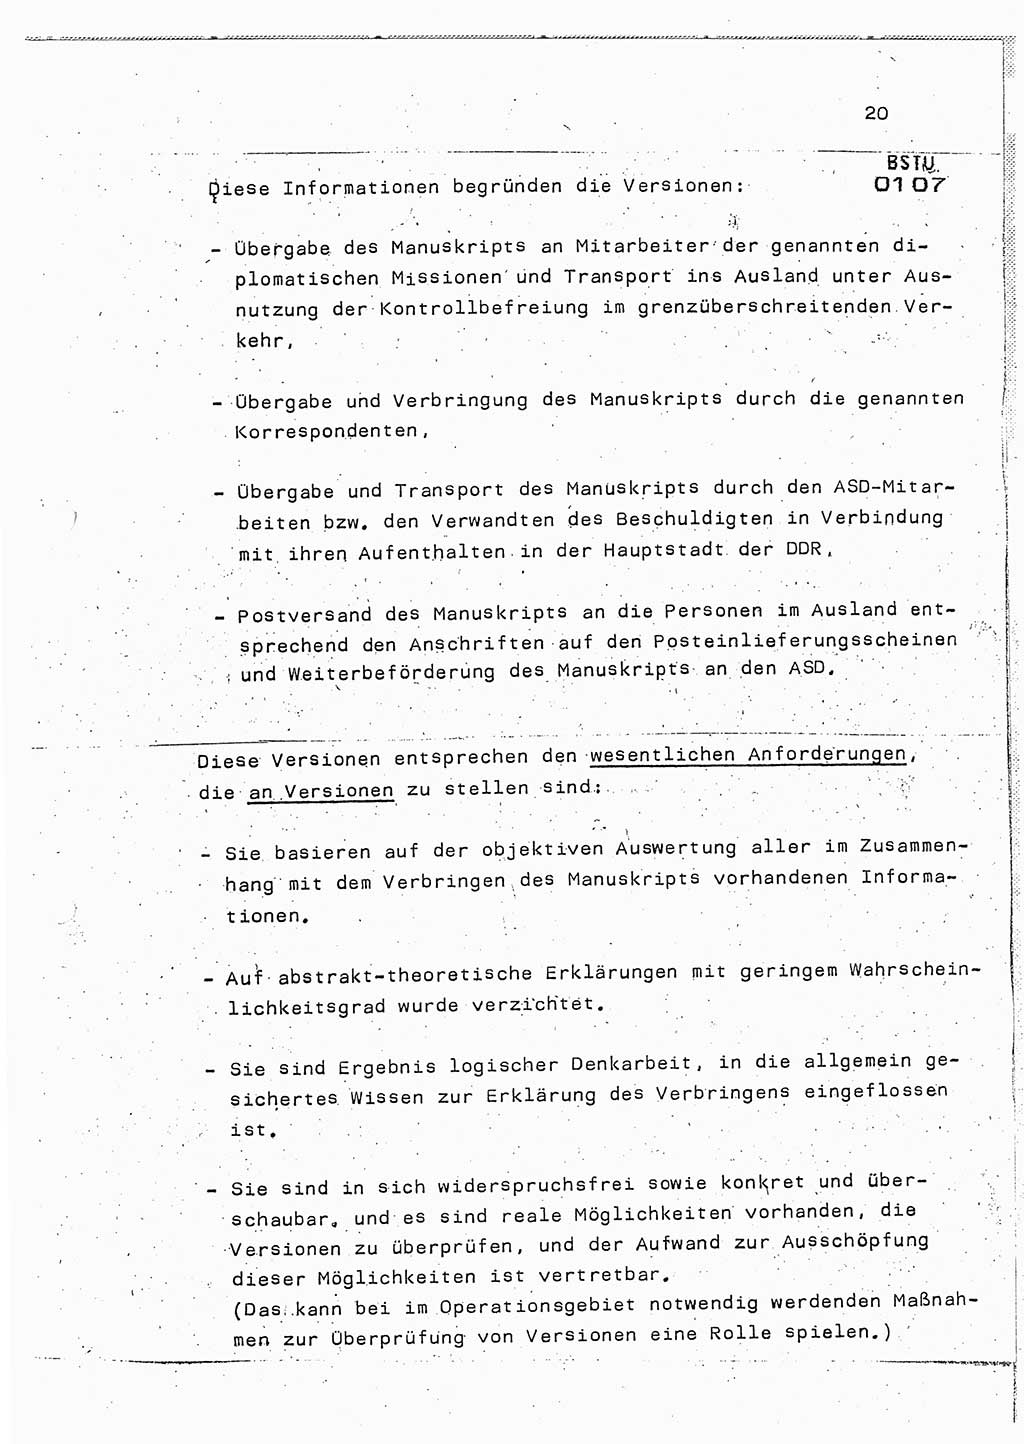 Lektion Ministerium für Staatssicherheit (MfS) [Deutsche Demokratische Republik (DDR)], Hauptabteilung (HA) Ⅸ, Berlin 1987, Seite 20 (Lekt. Pln. Bearb. EV MfS DDR HA Ⅸ /87 1987, S. 20)